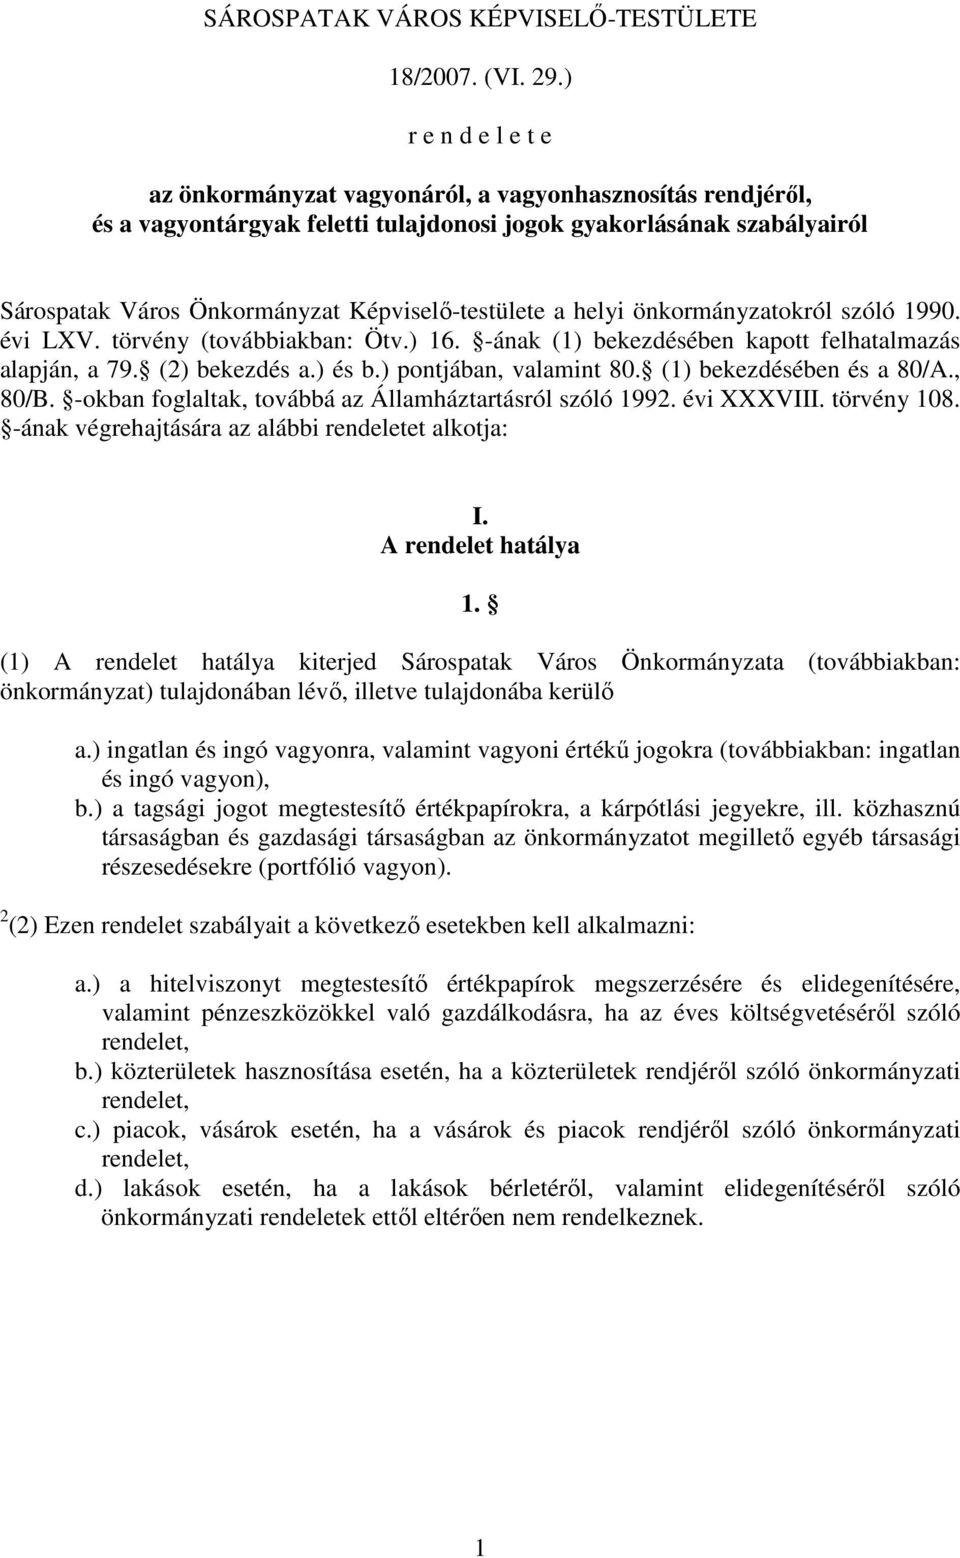 Képviselı-testülete a helyi önkormányzatokról szóló 1990. évi LXV. törvény (továbbiakban: Ötv.) 16. -ának (1) bekezdésében kapott felhatalmazás alapján, a 79. (2) bekezdés a.) és b.